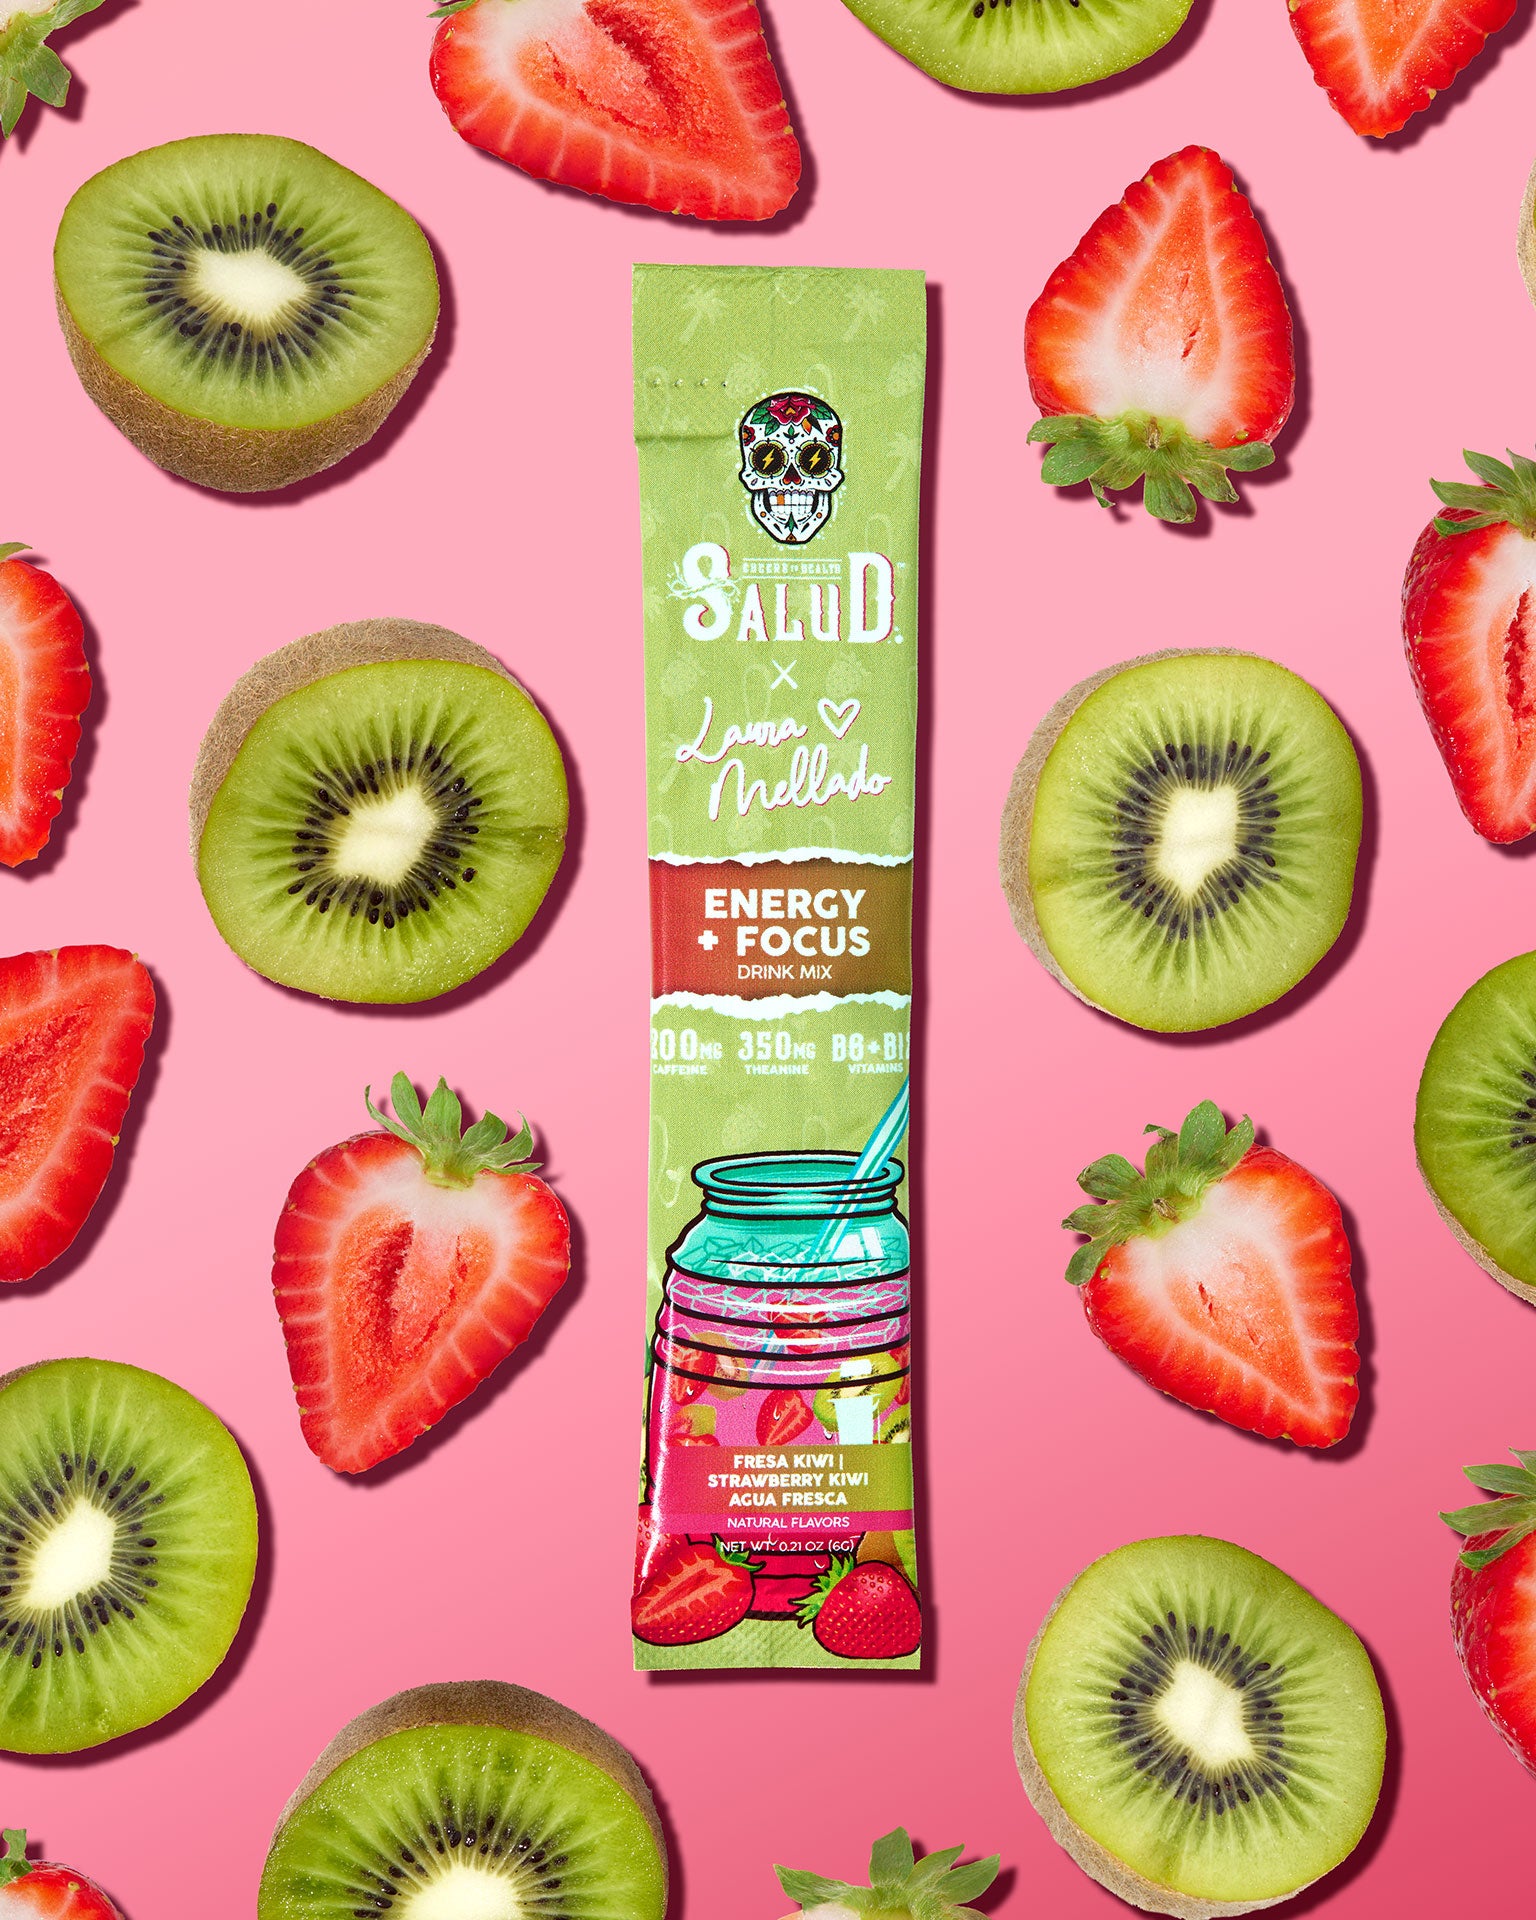 Fresa Kiwi | Strawberry Kiwi